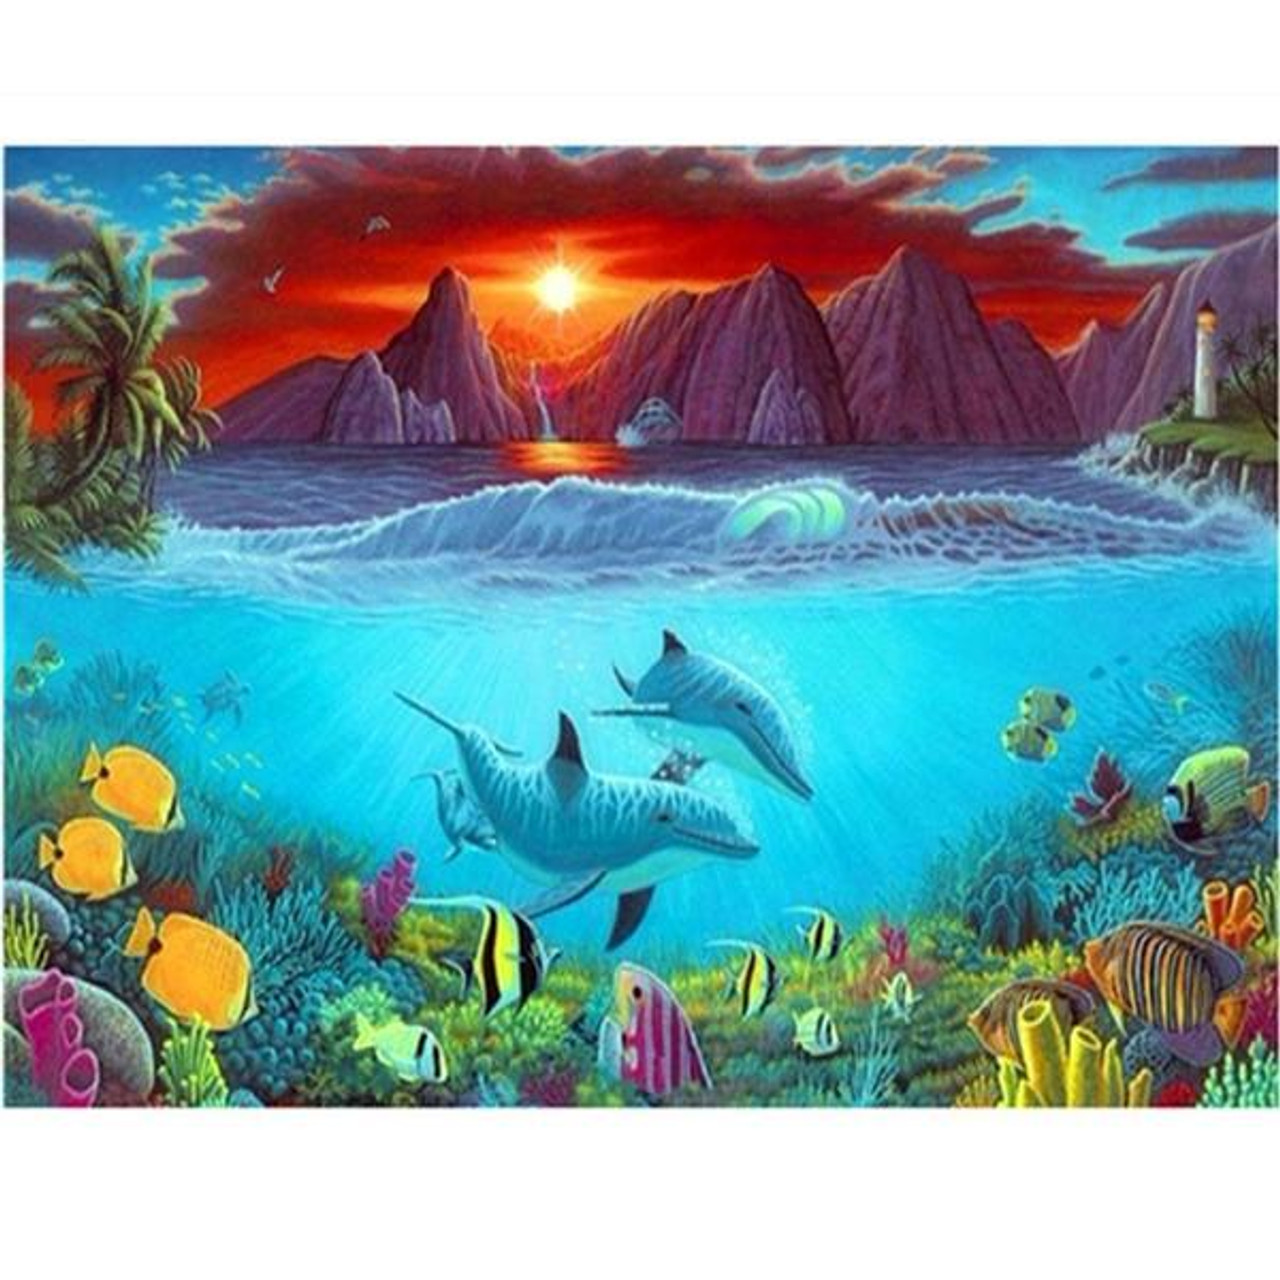 5D Diamond Painting Dolphin Sunset Mountains Kit - Bonanza Marketplace